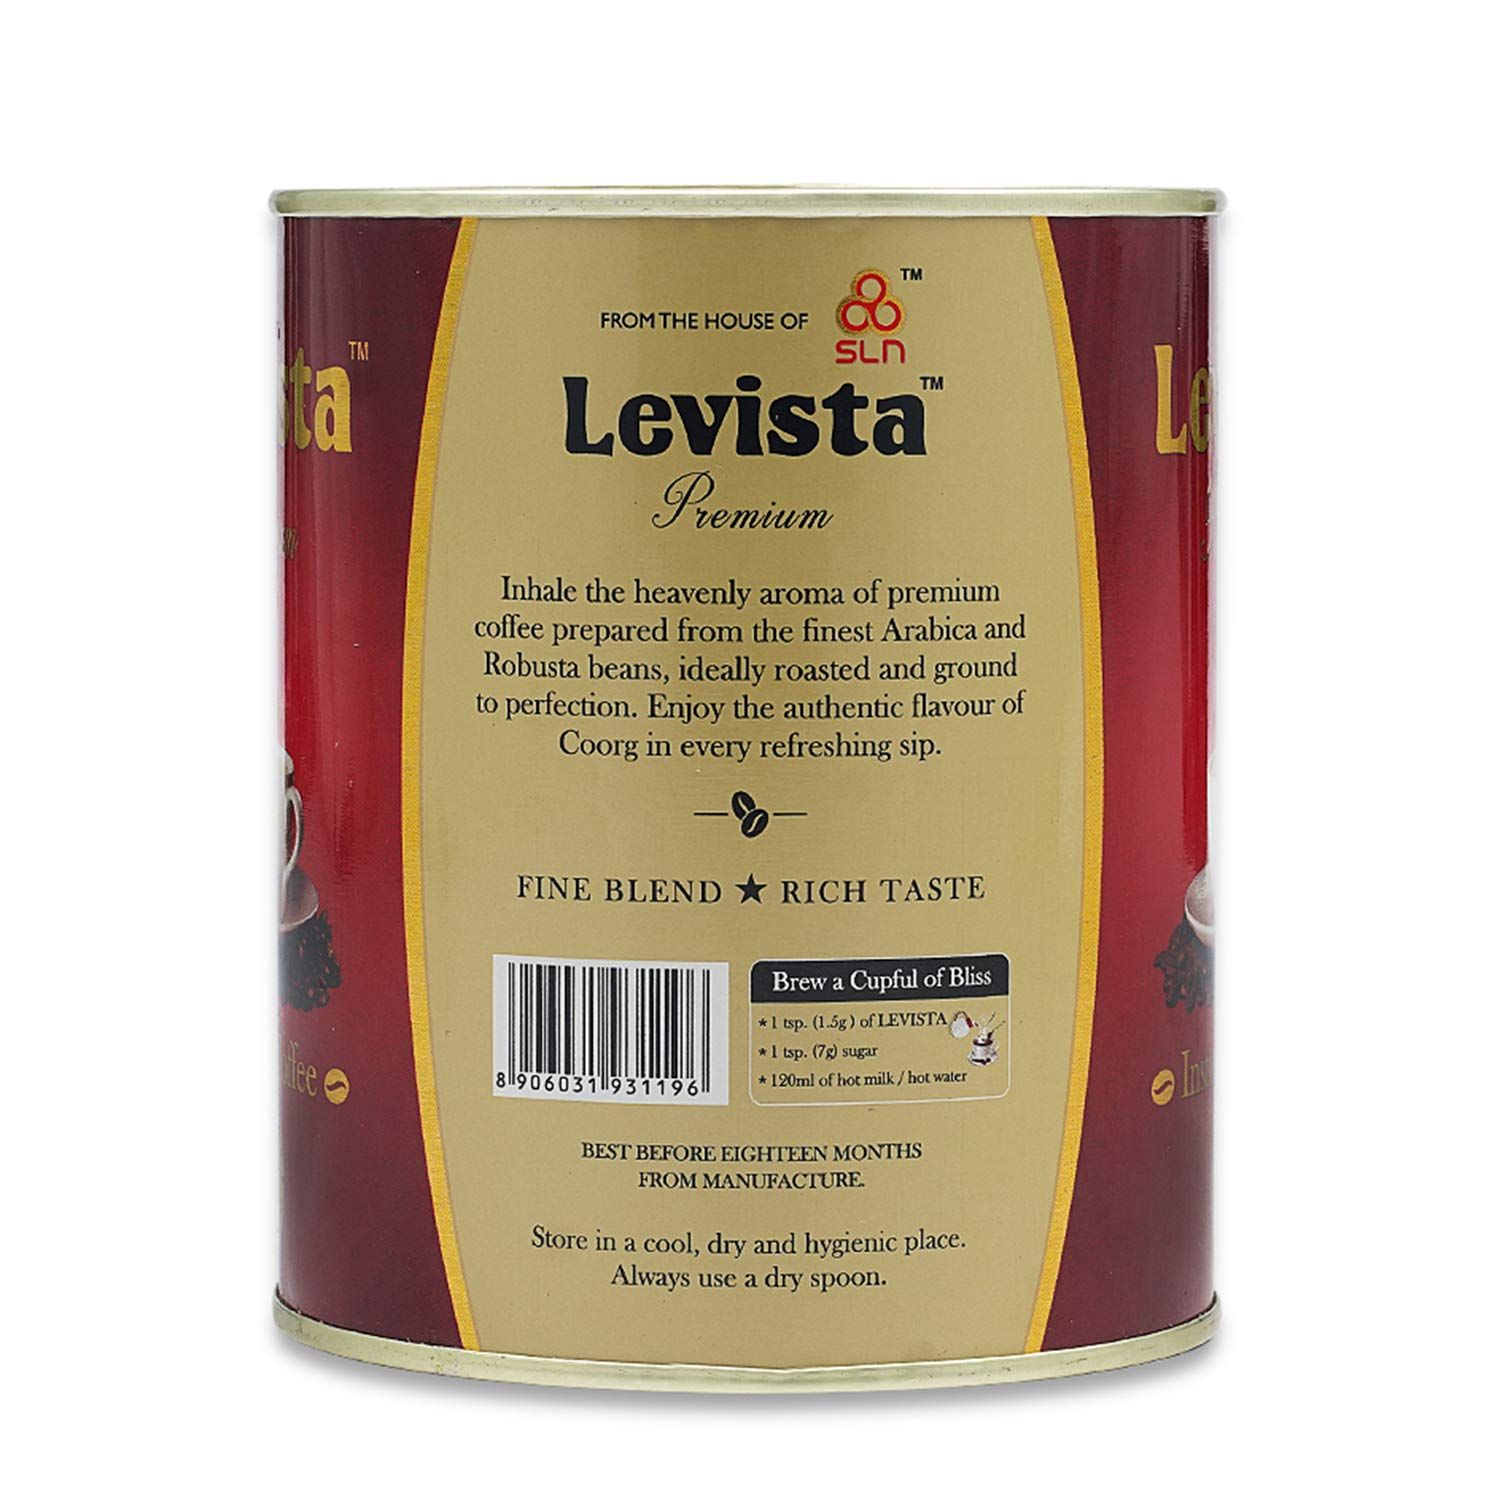 Levista Premium Instant Coffee Image